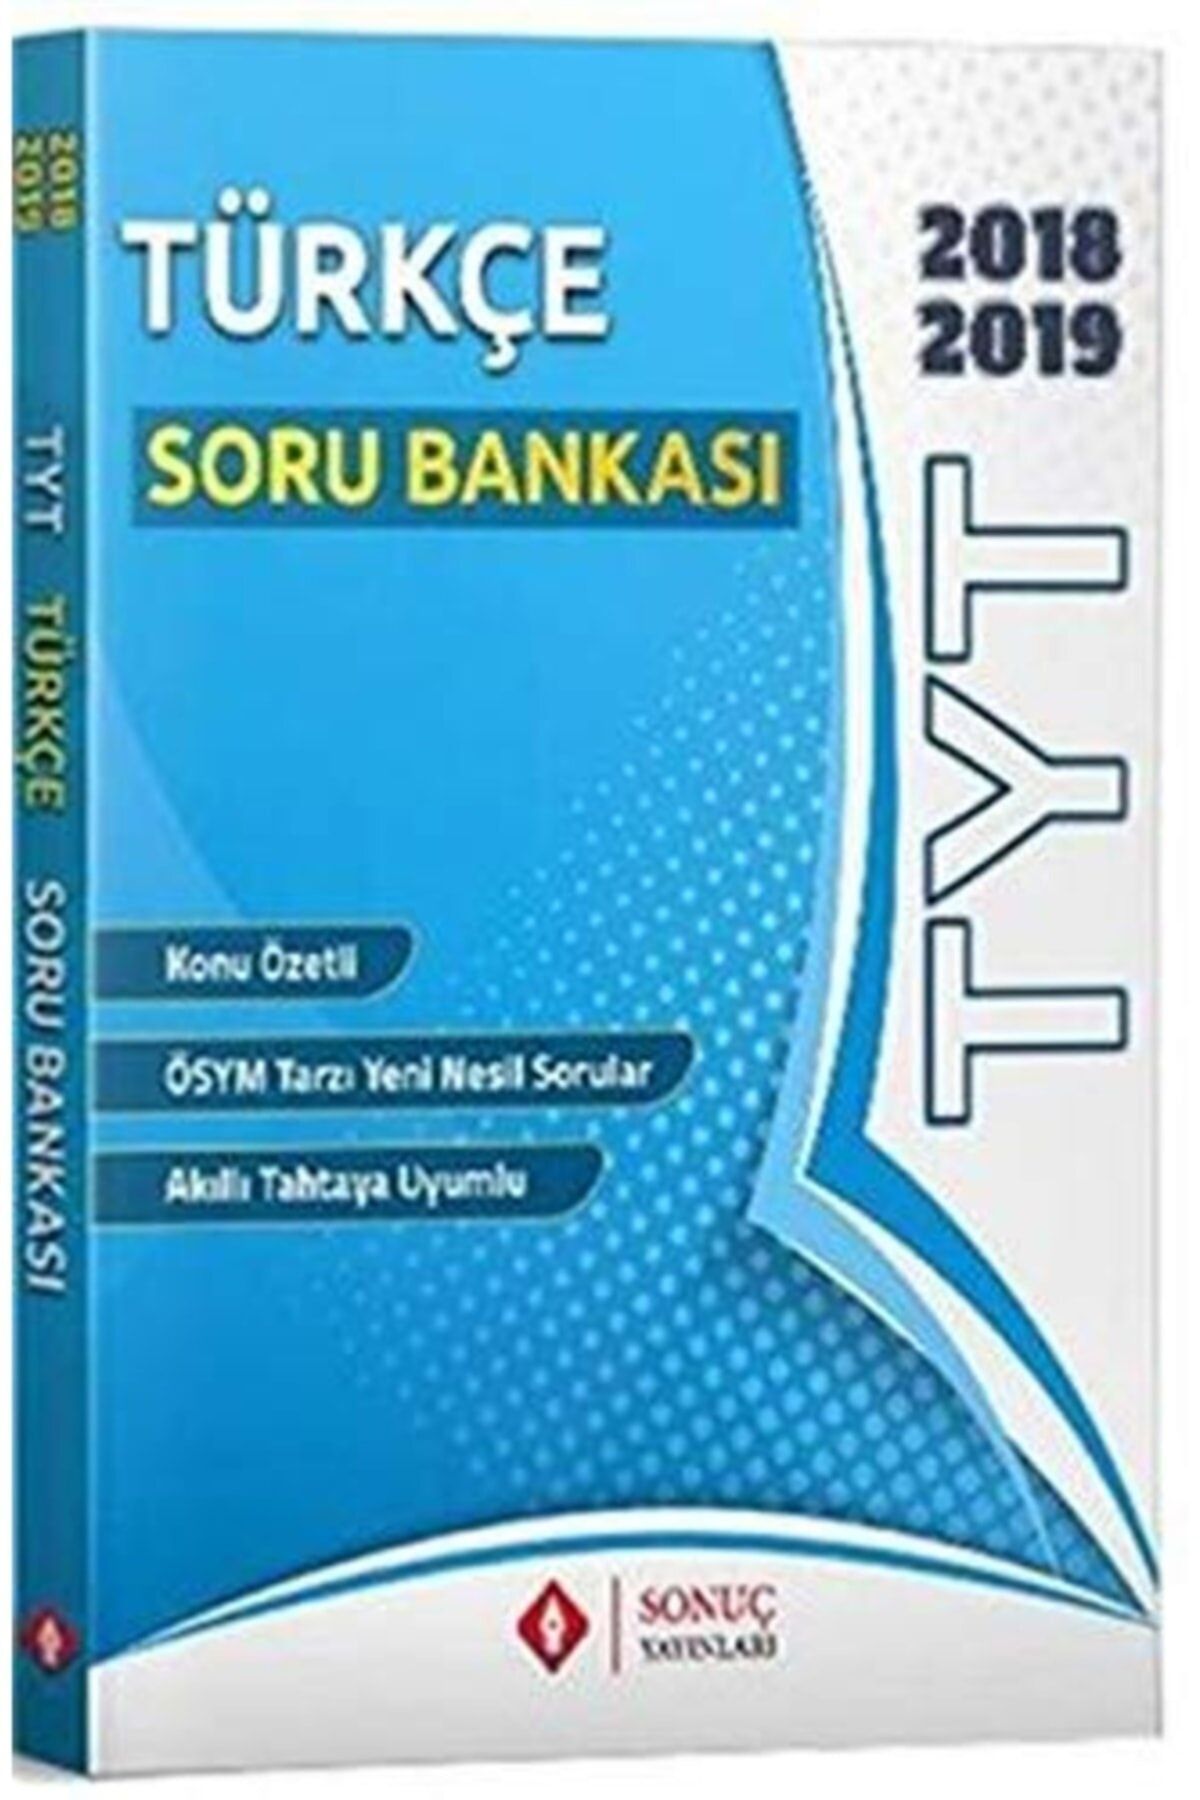 Sonuç Yayınları Yks / Tyt Türkçe Soru Bankası